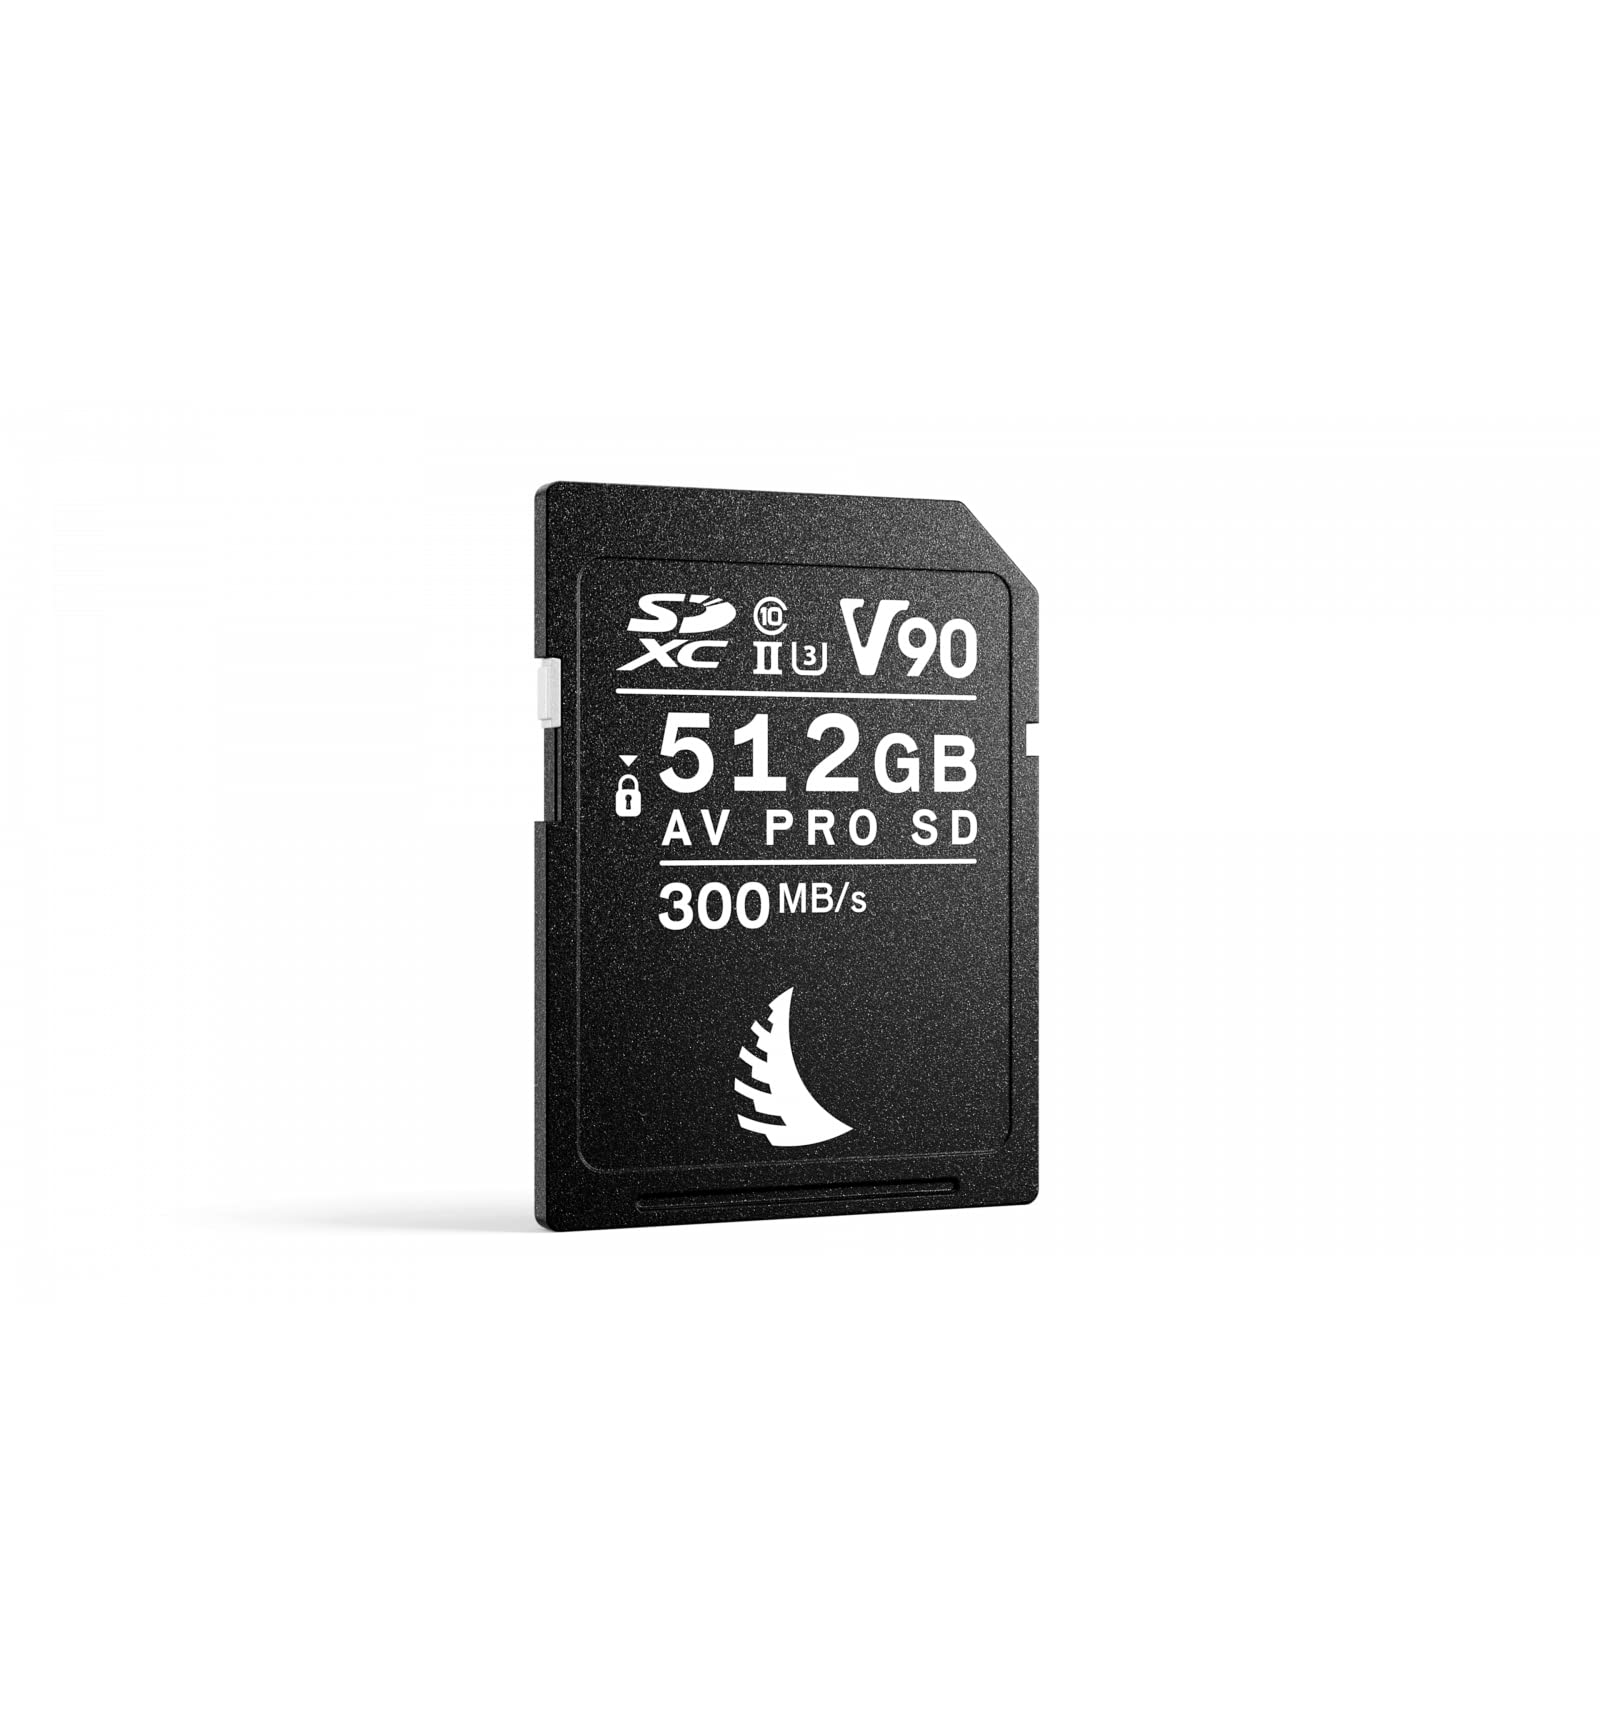 AV PRO SD V90 MK2 512 GB